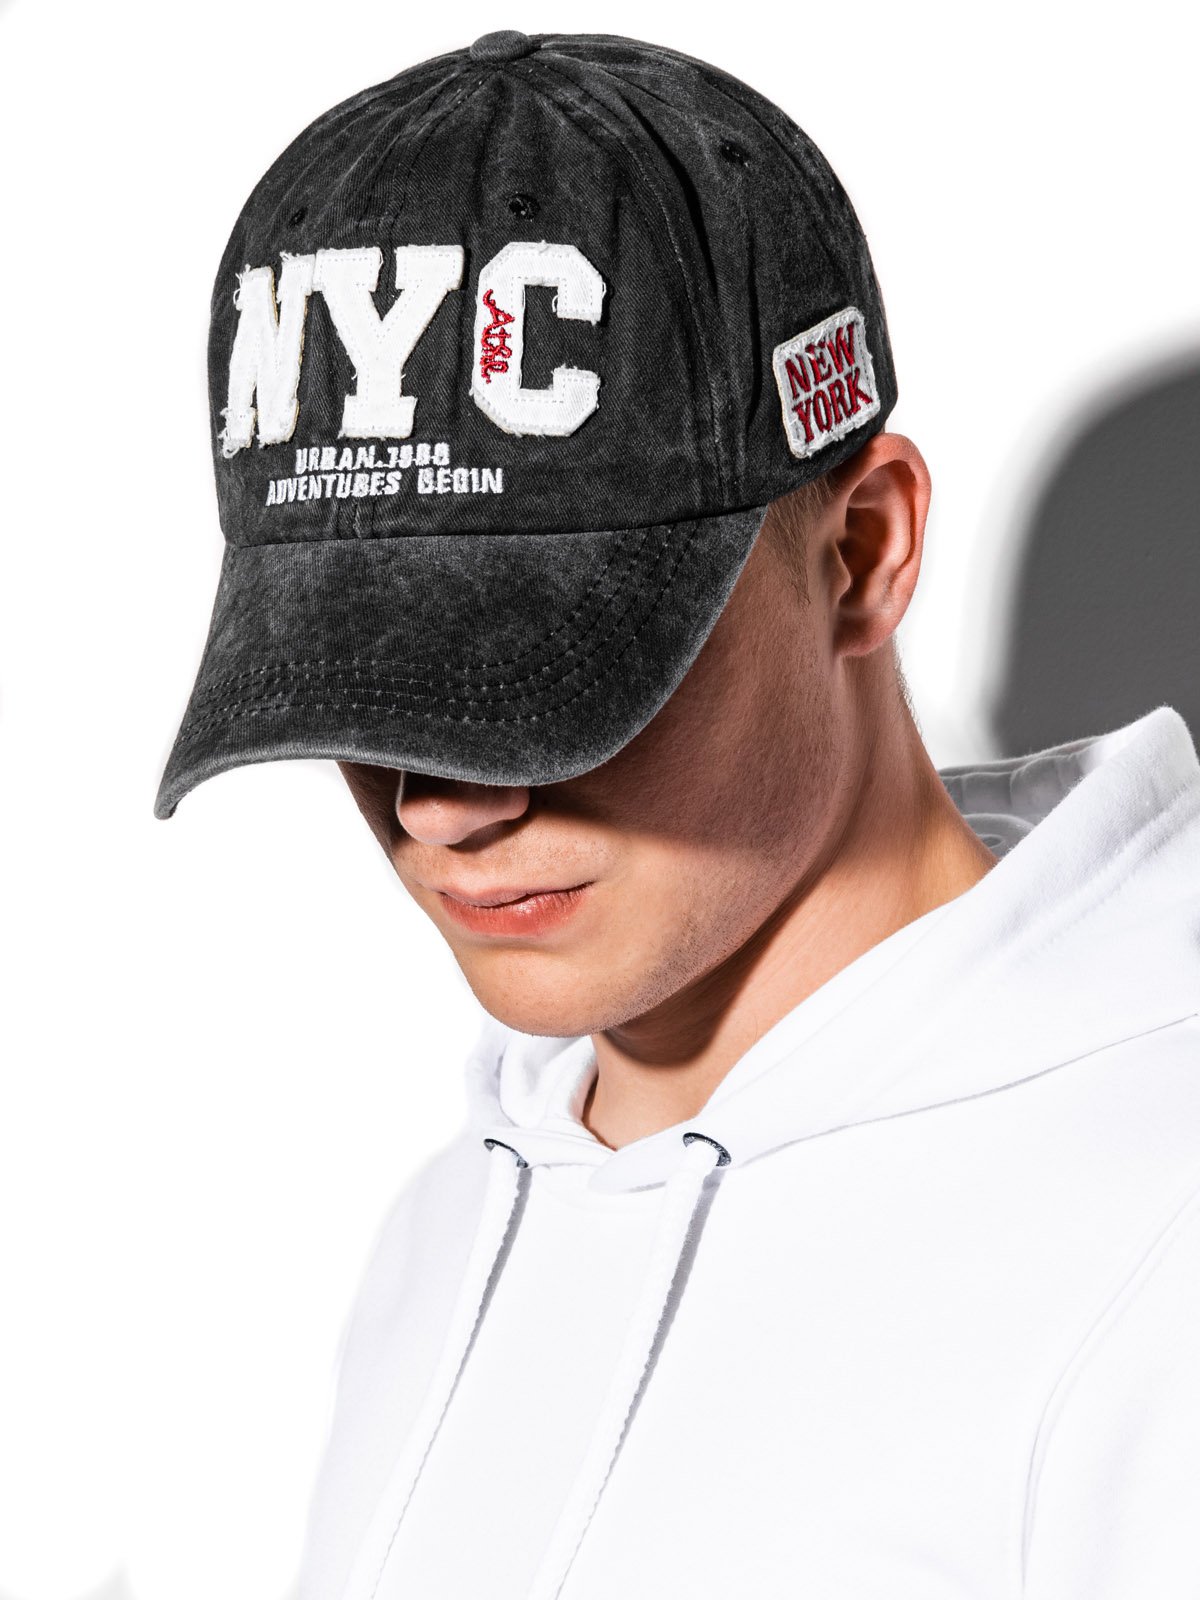 Men's cap - black H014  MODONE wholesale - Clothing For Men